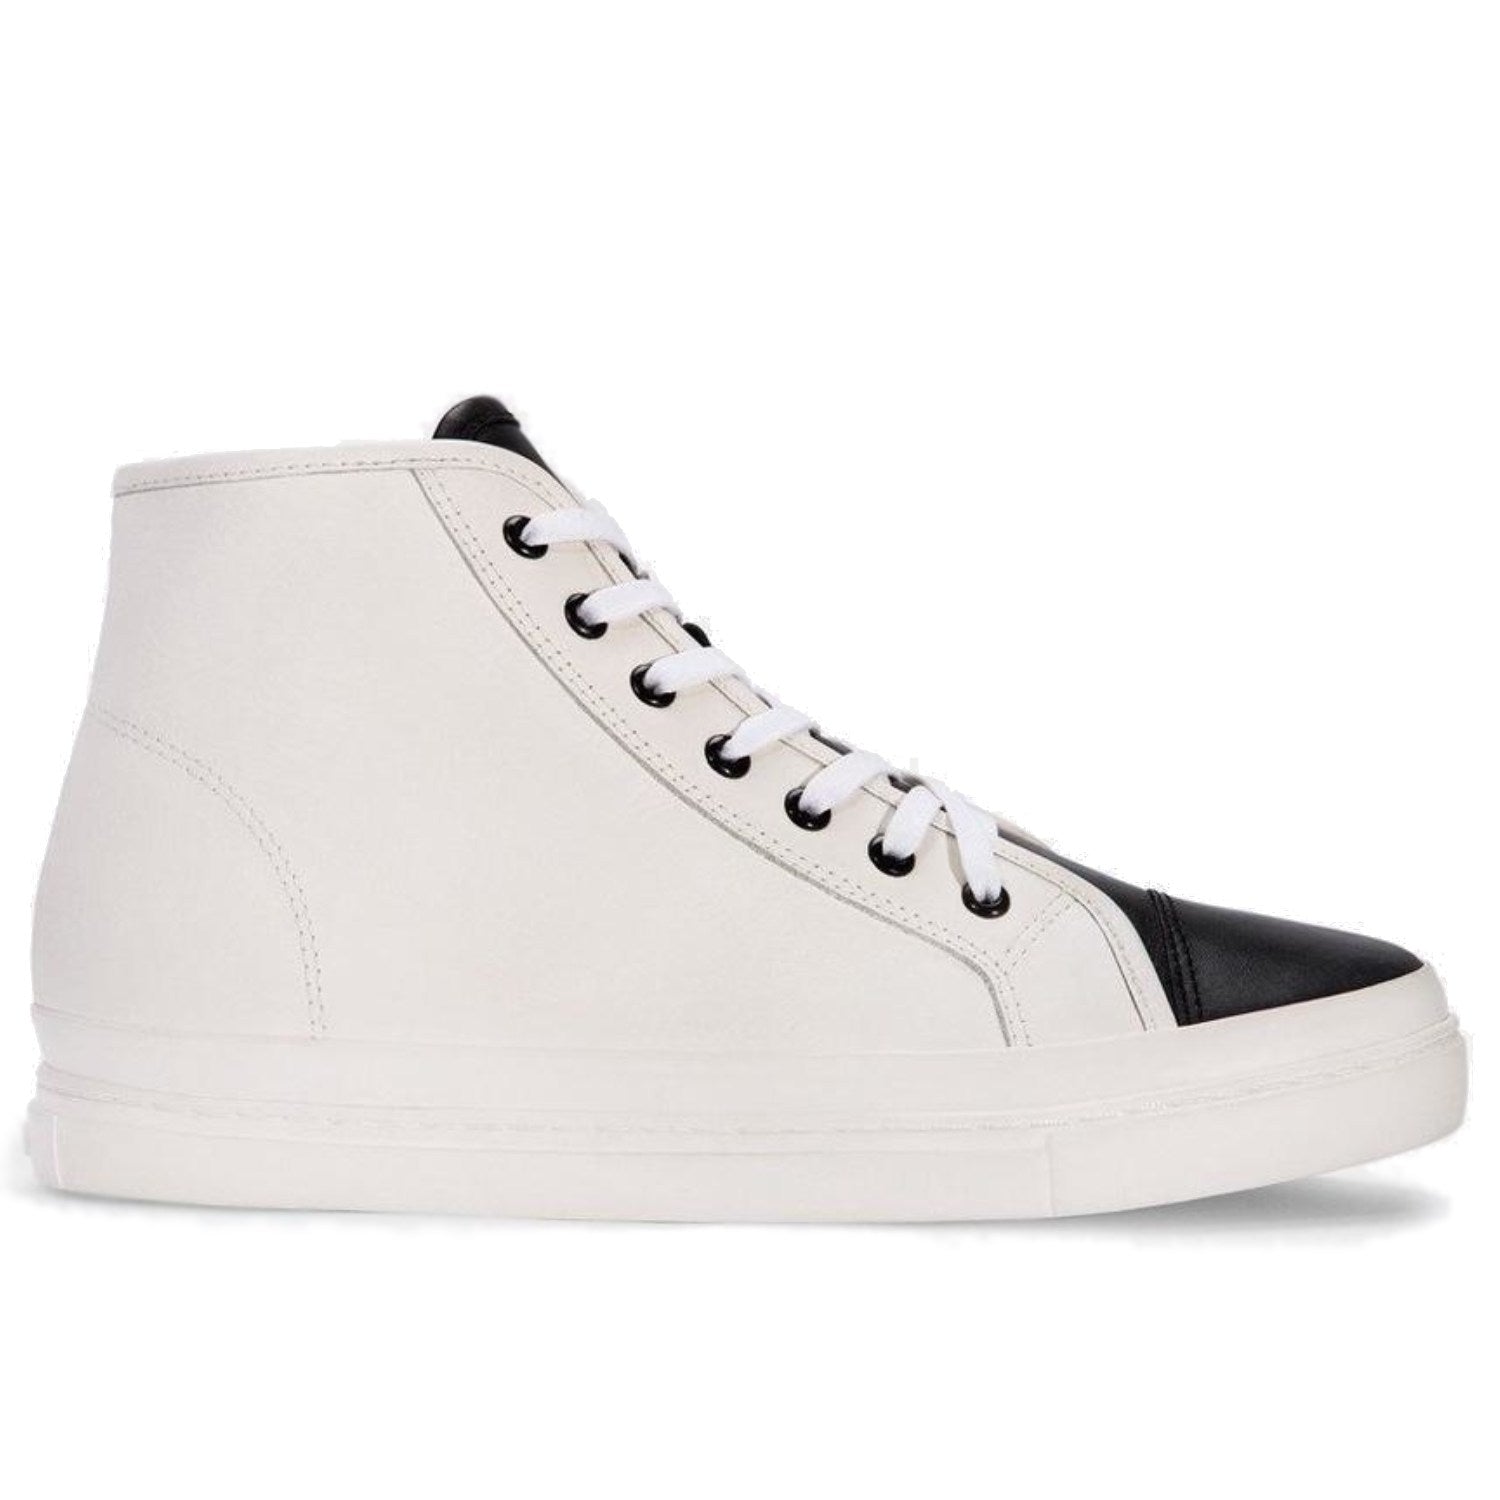 ONTO Tilden -  Black/White Leather Sneaker